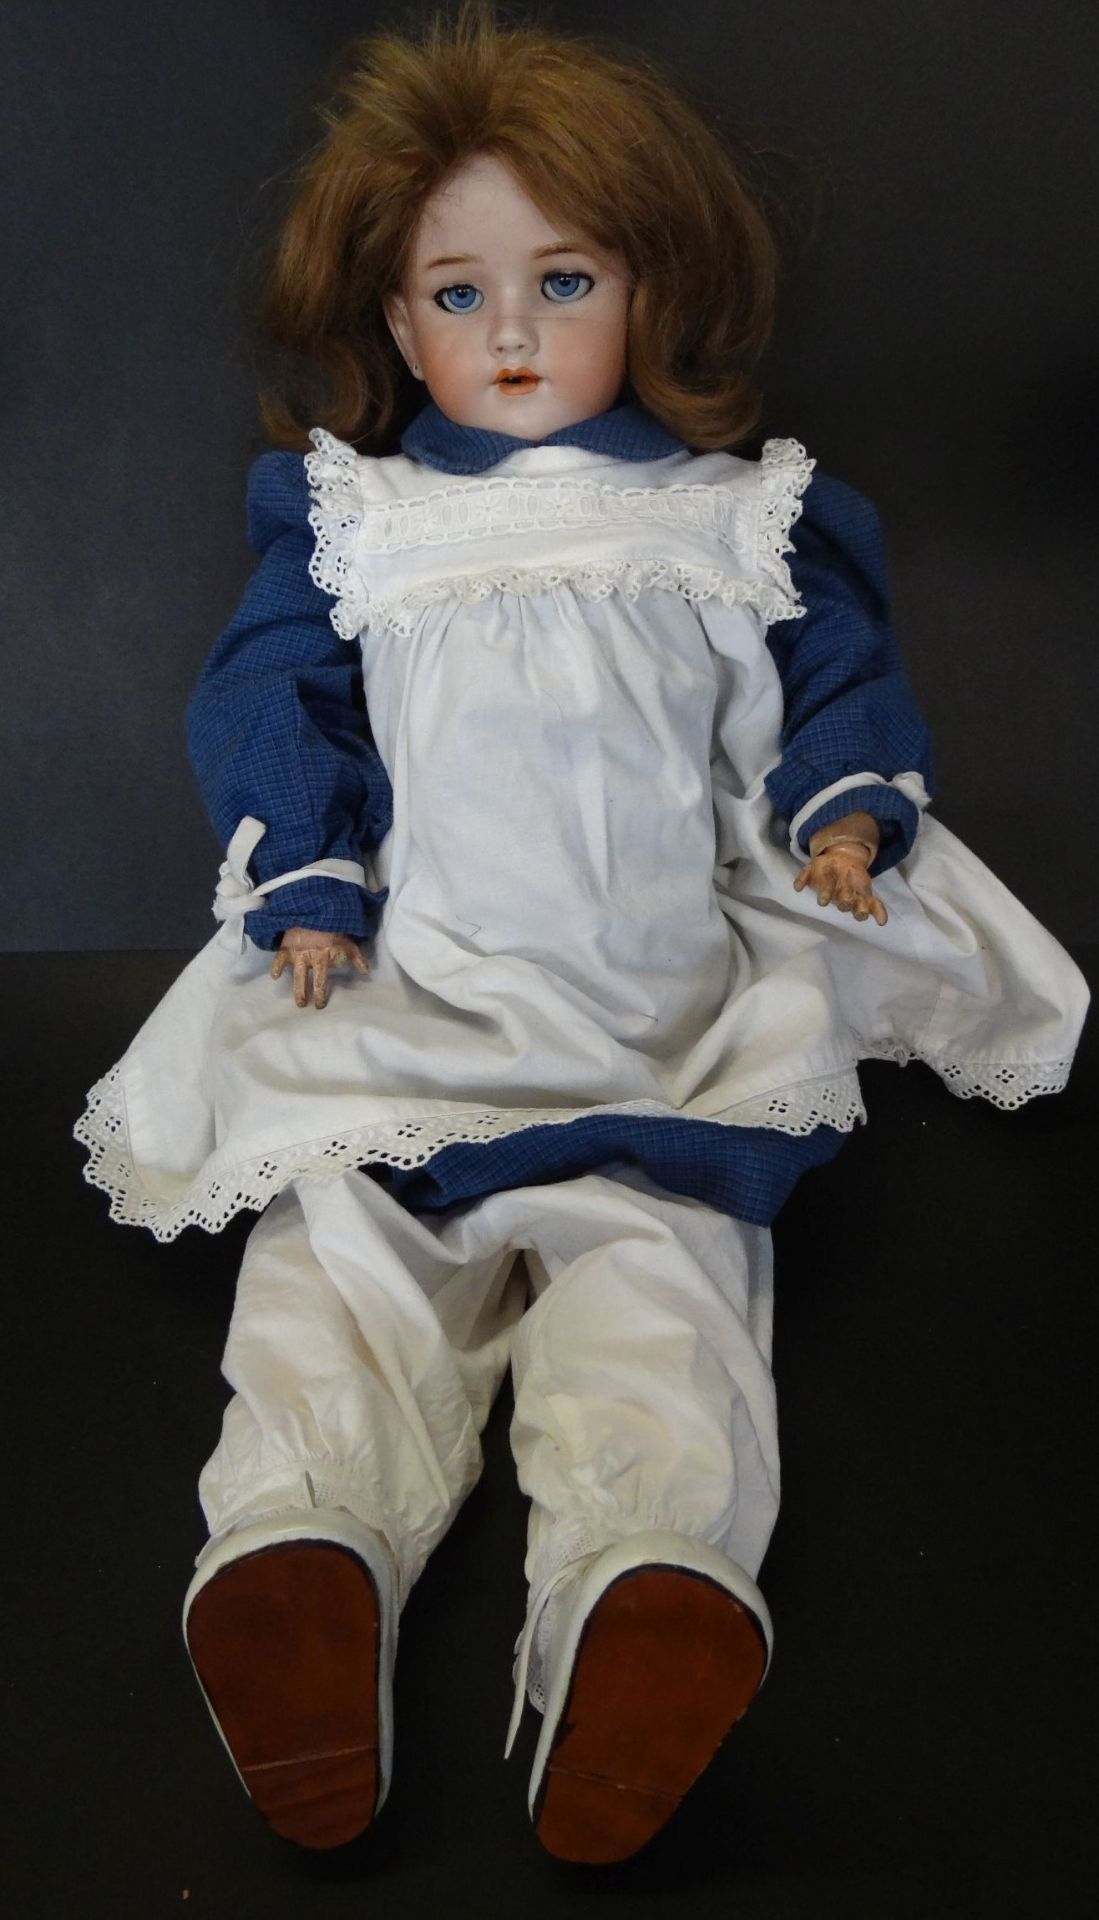 Heinrich Handwerck - Puppe Mädchen, um 1910/20, gem. 119 13, Handwerck Germany 5, Biskuitporzellan-